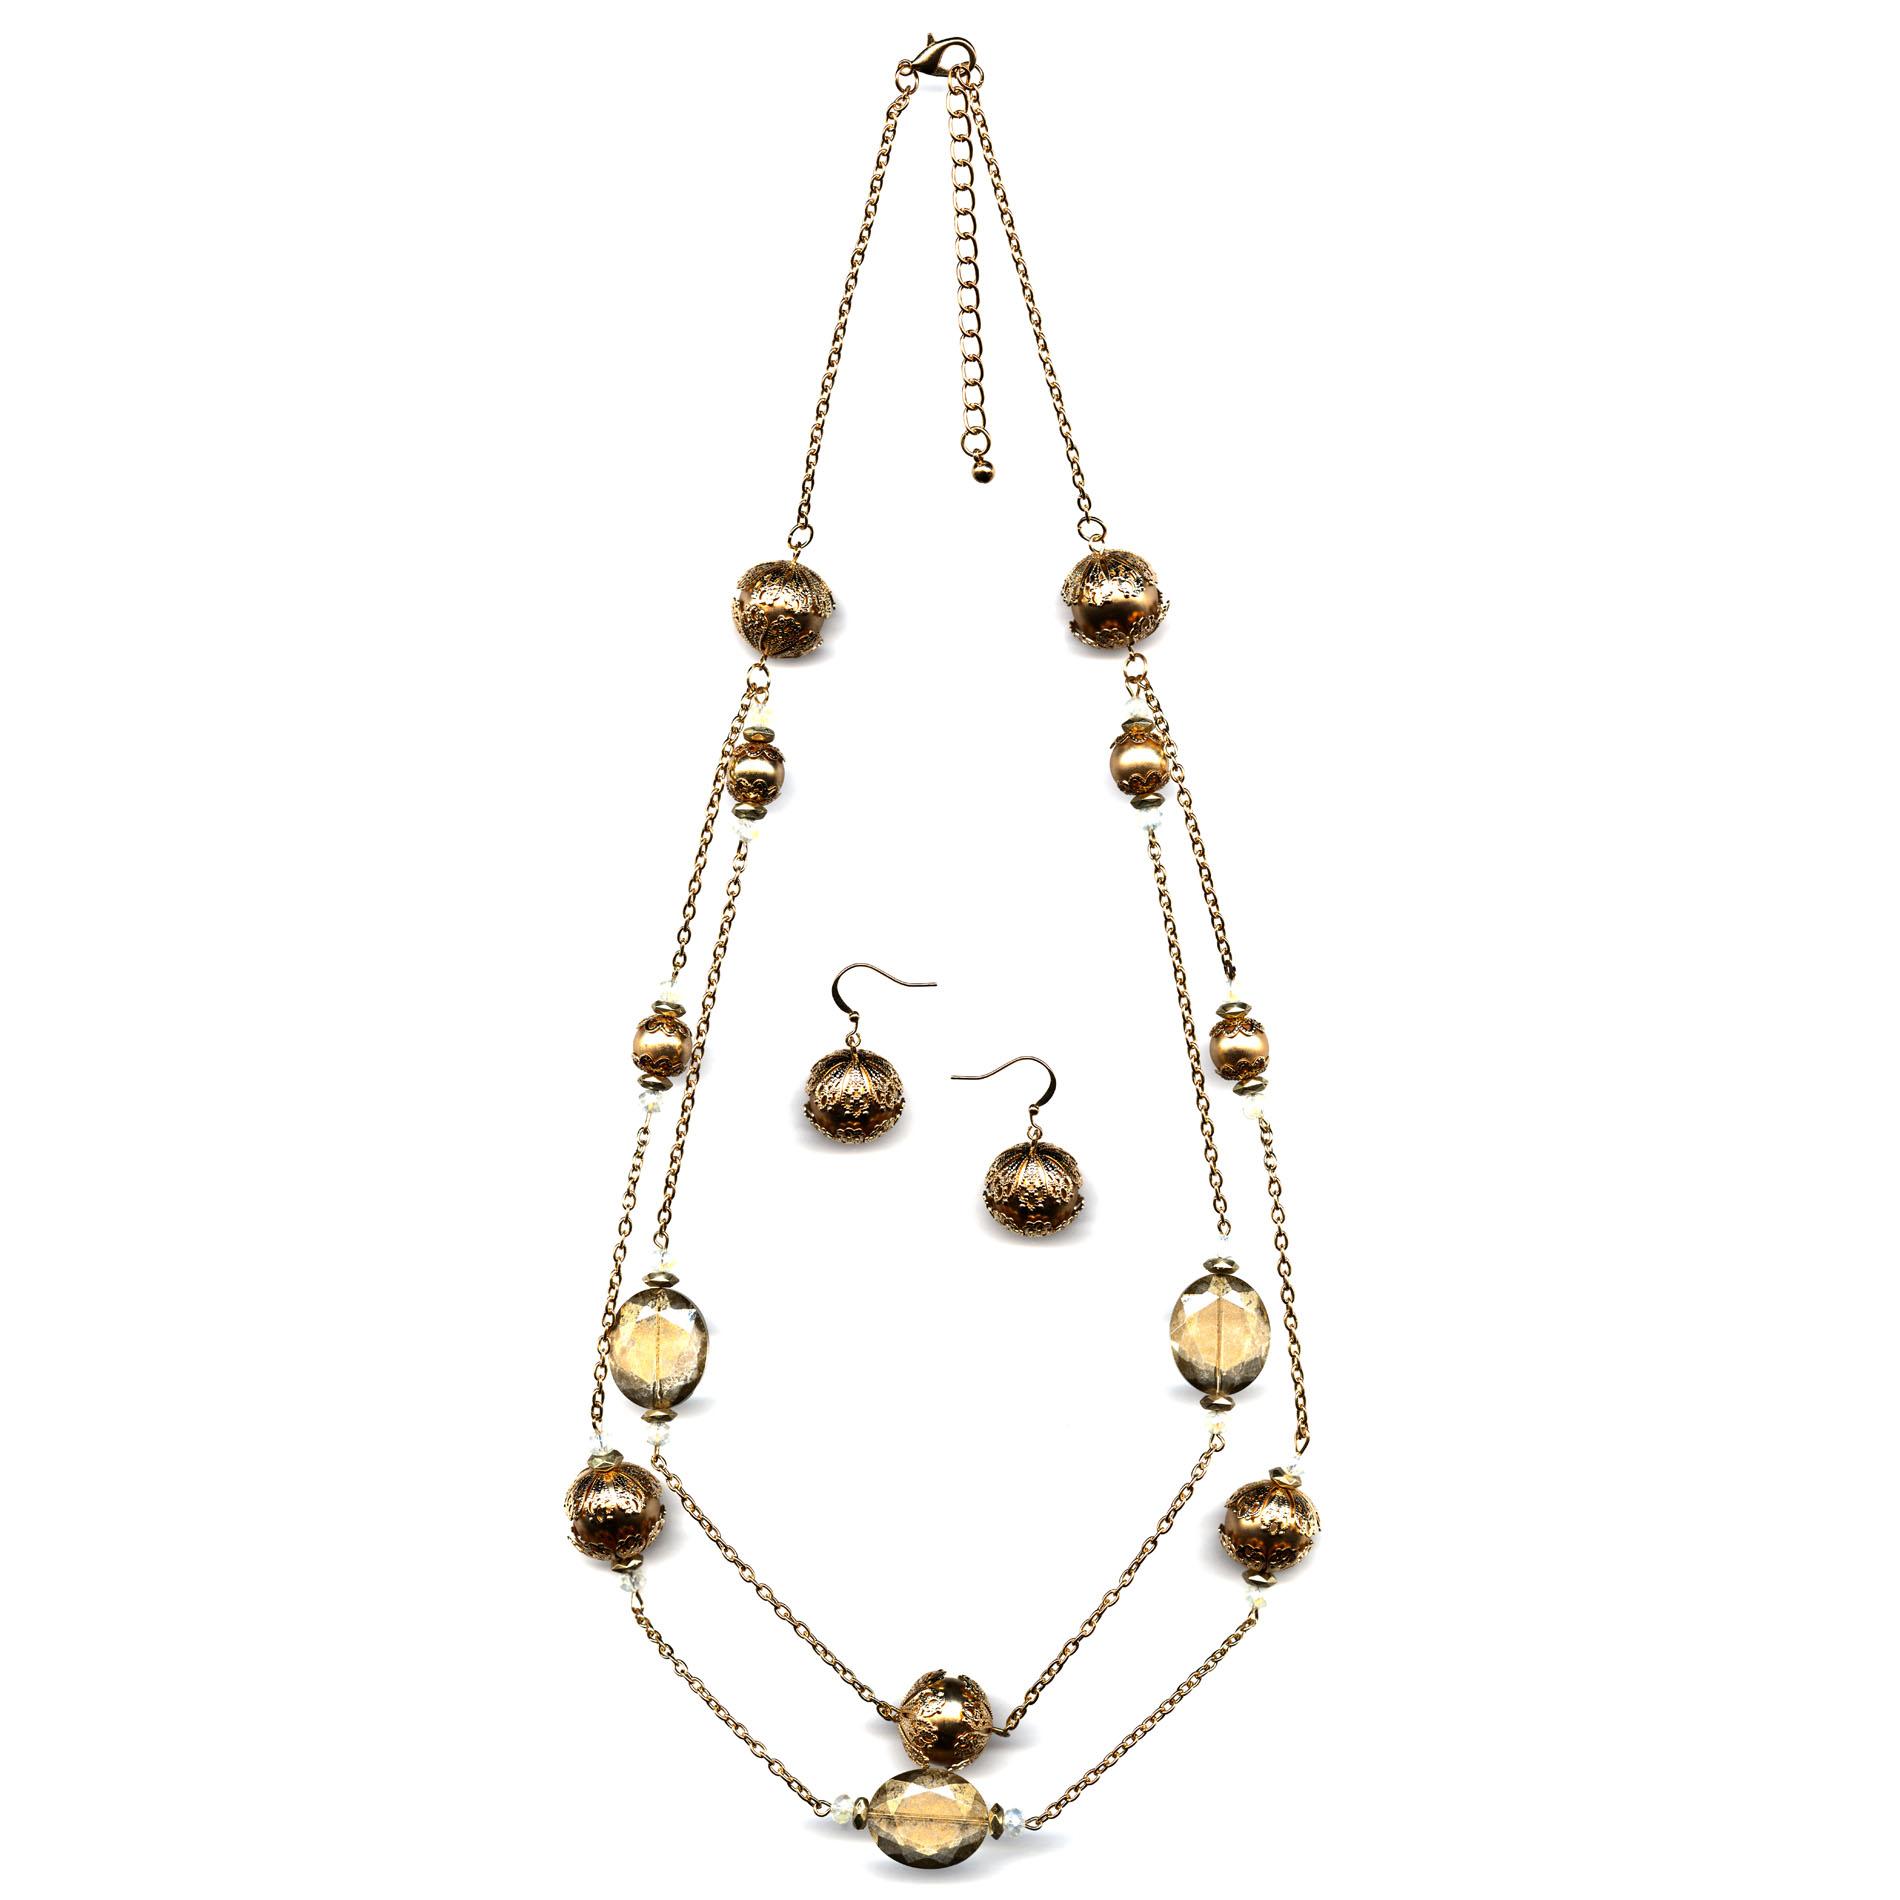 Jaclyn Smith Women's Goldtone Station Necklace & Earrings